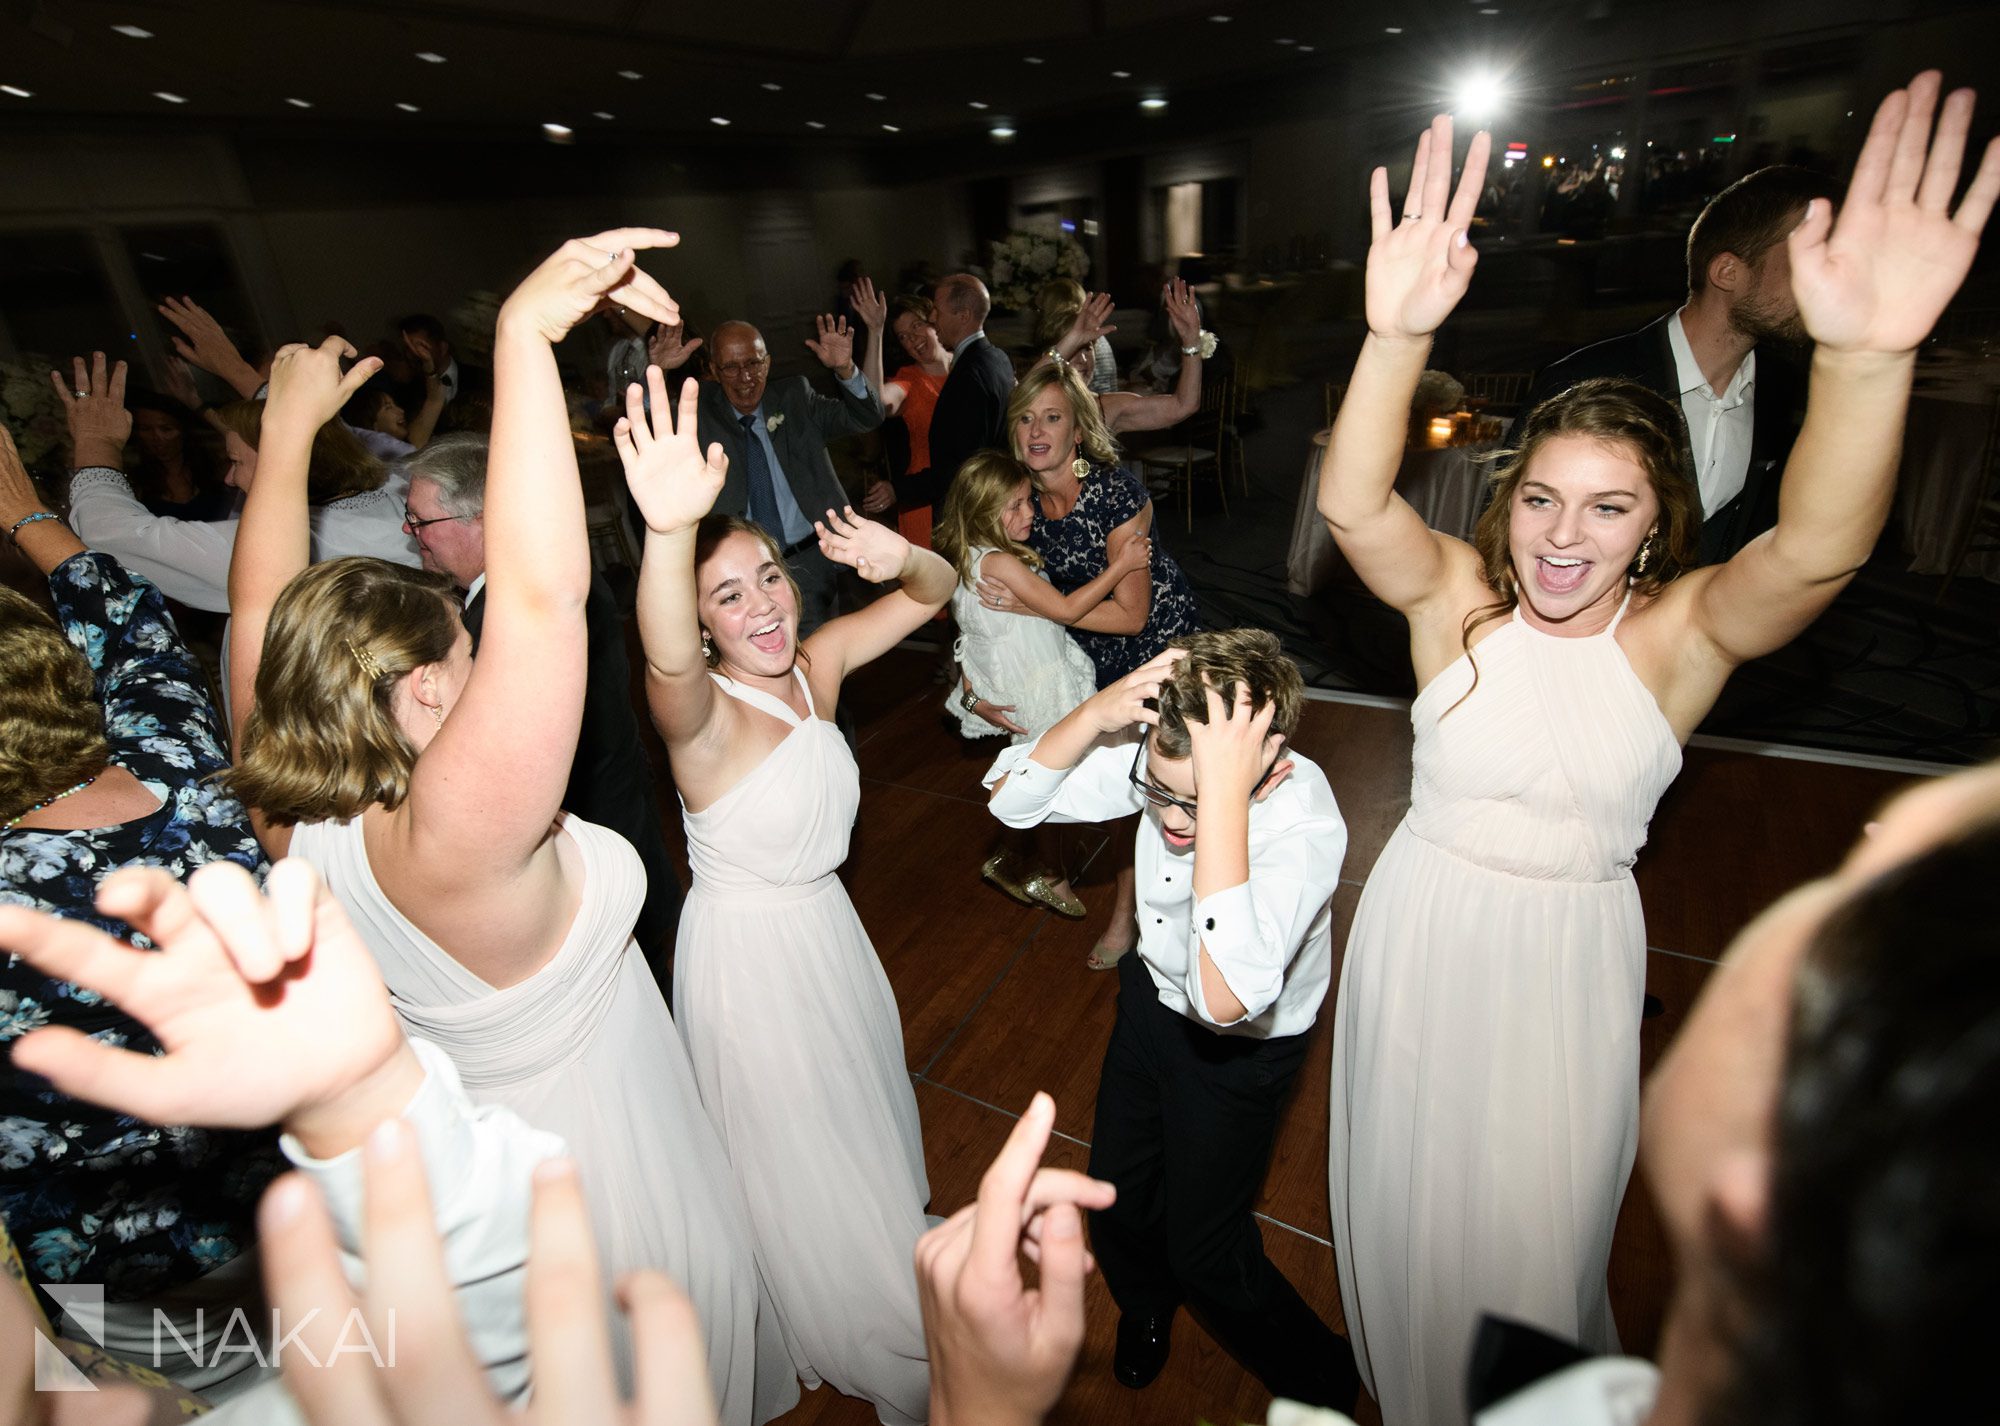 fairmont chicago wedding photos reception dancing